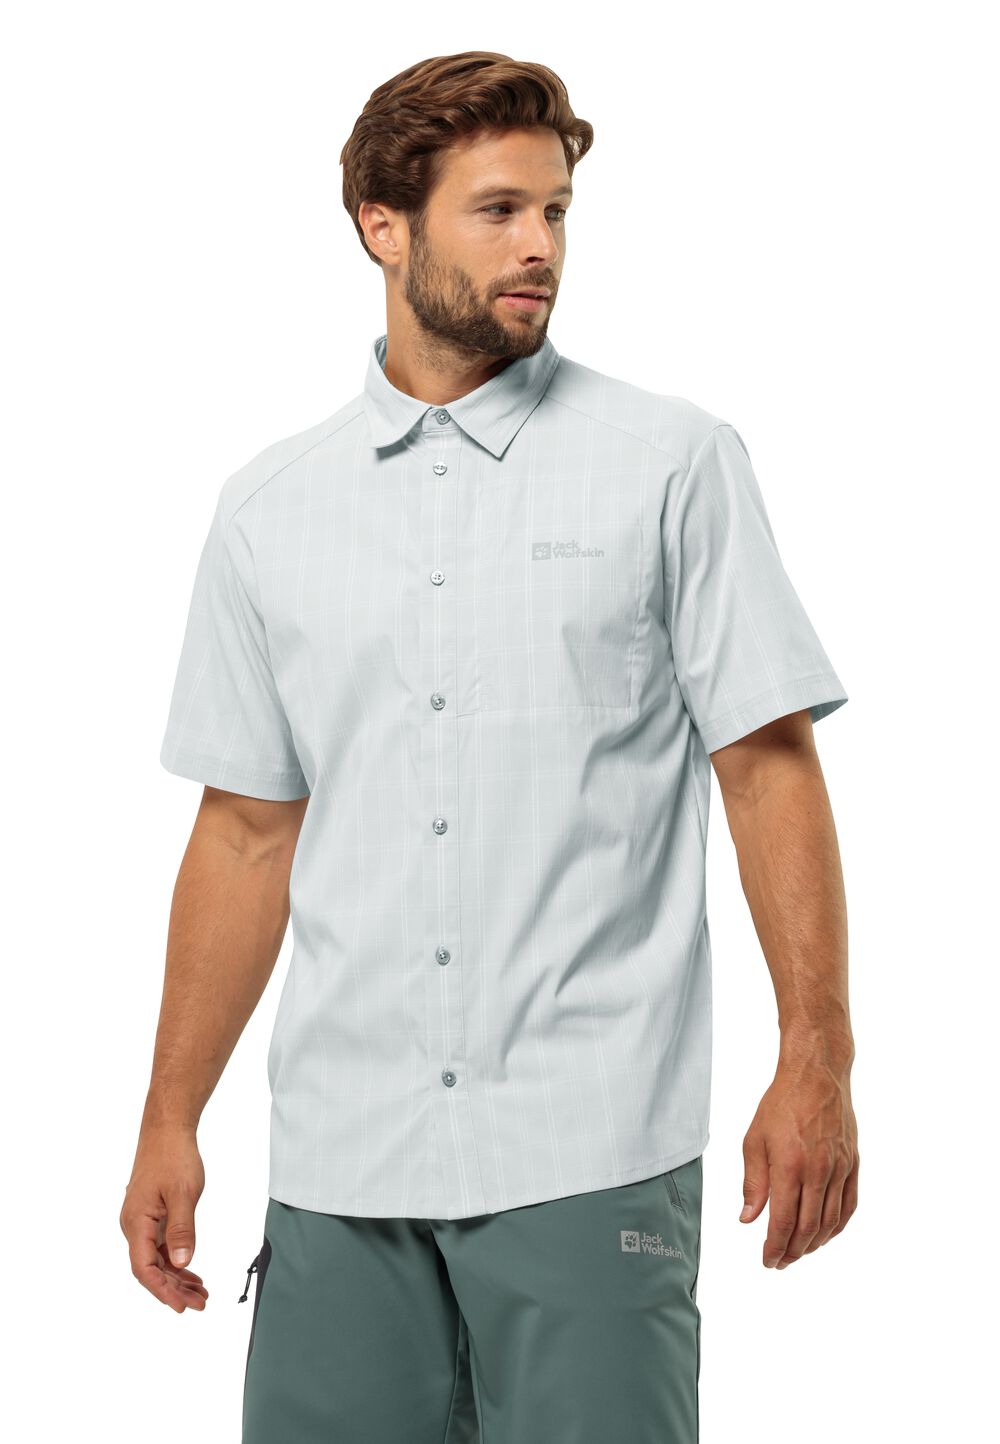 Jack Wolfskin Norbo S S Shirt Men Overhemd met korte mouwen Heren XL grijs cool grey check